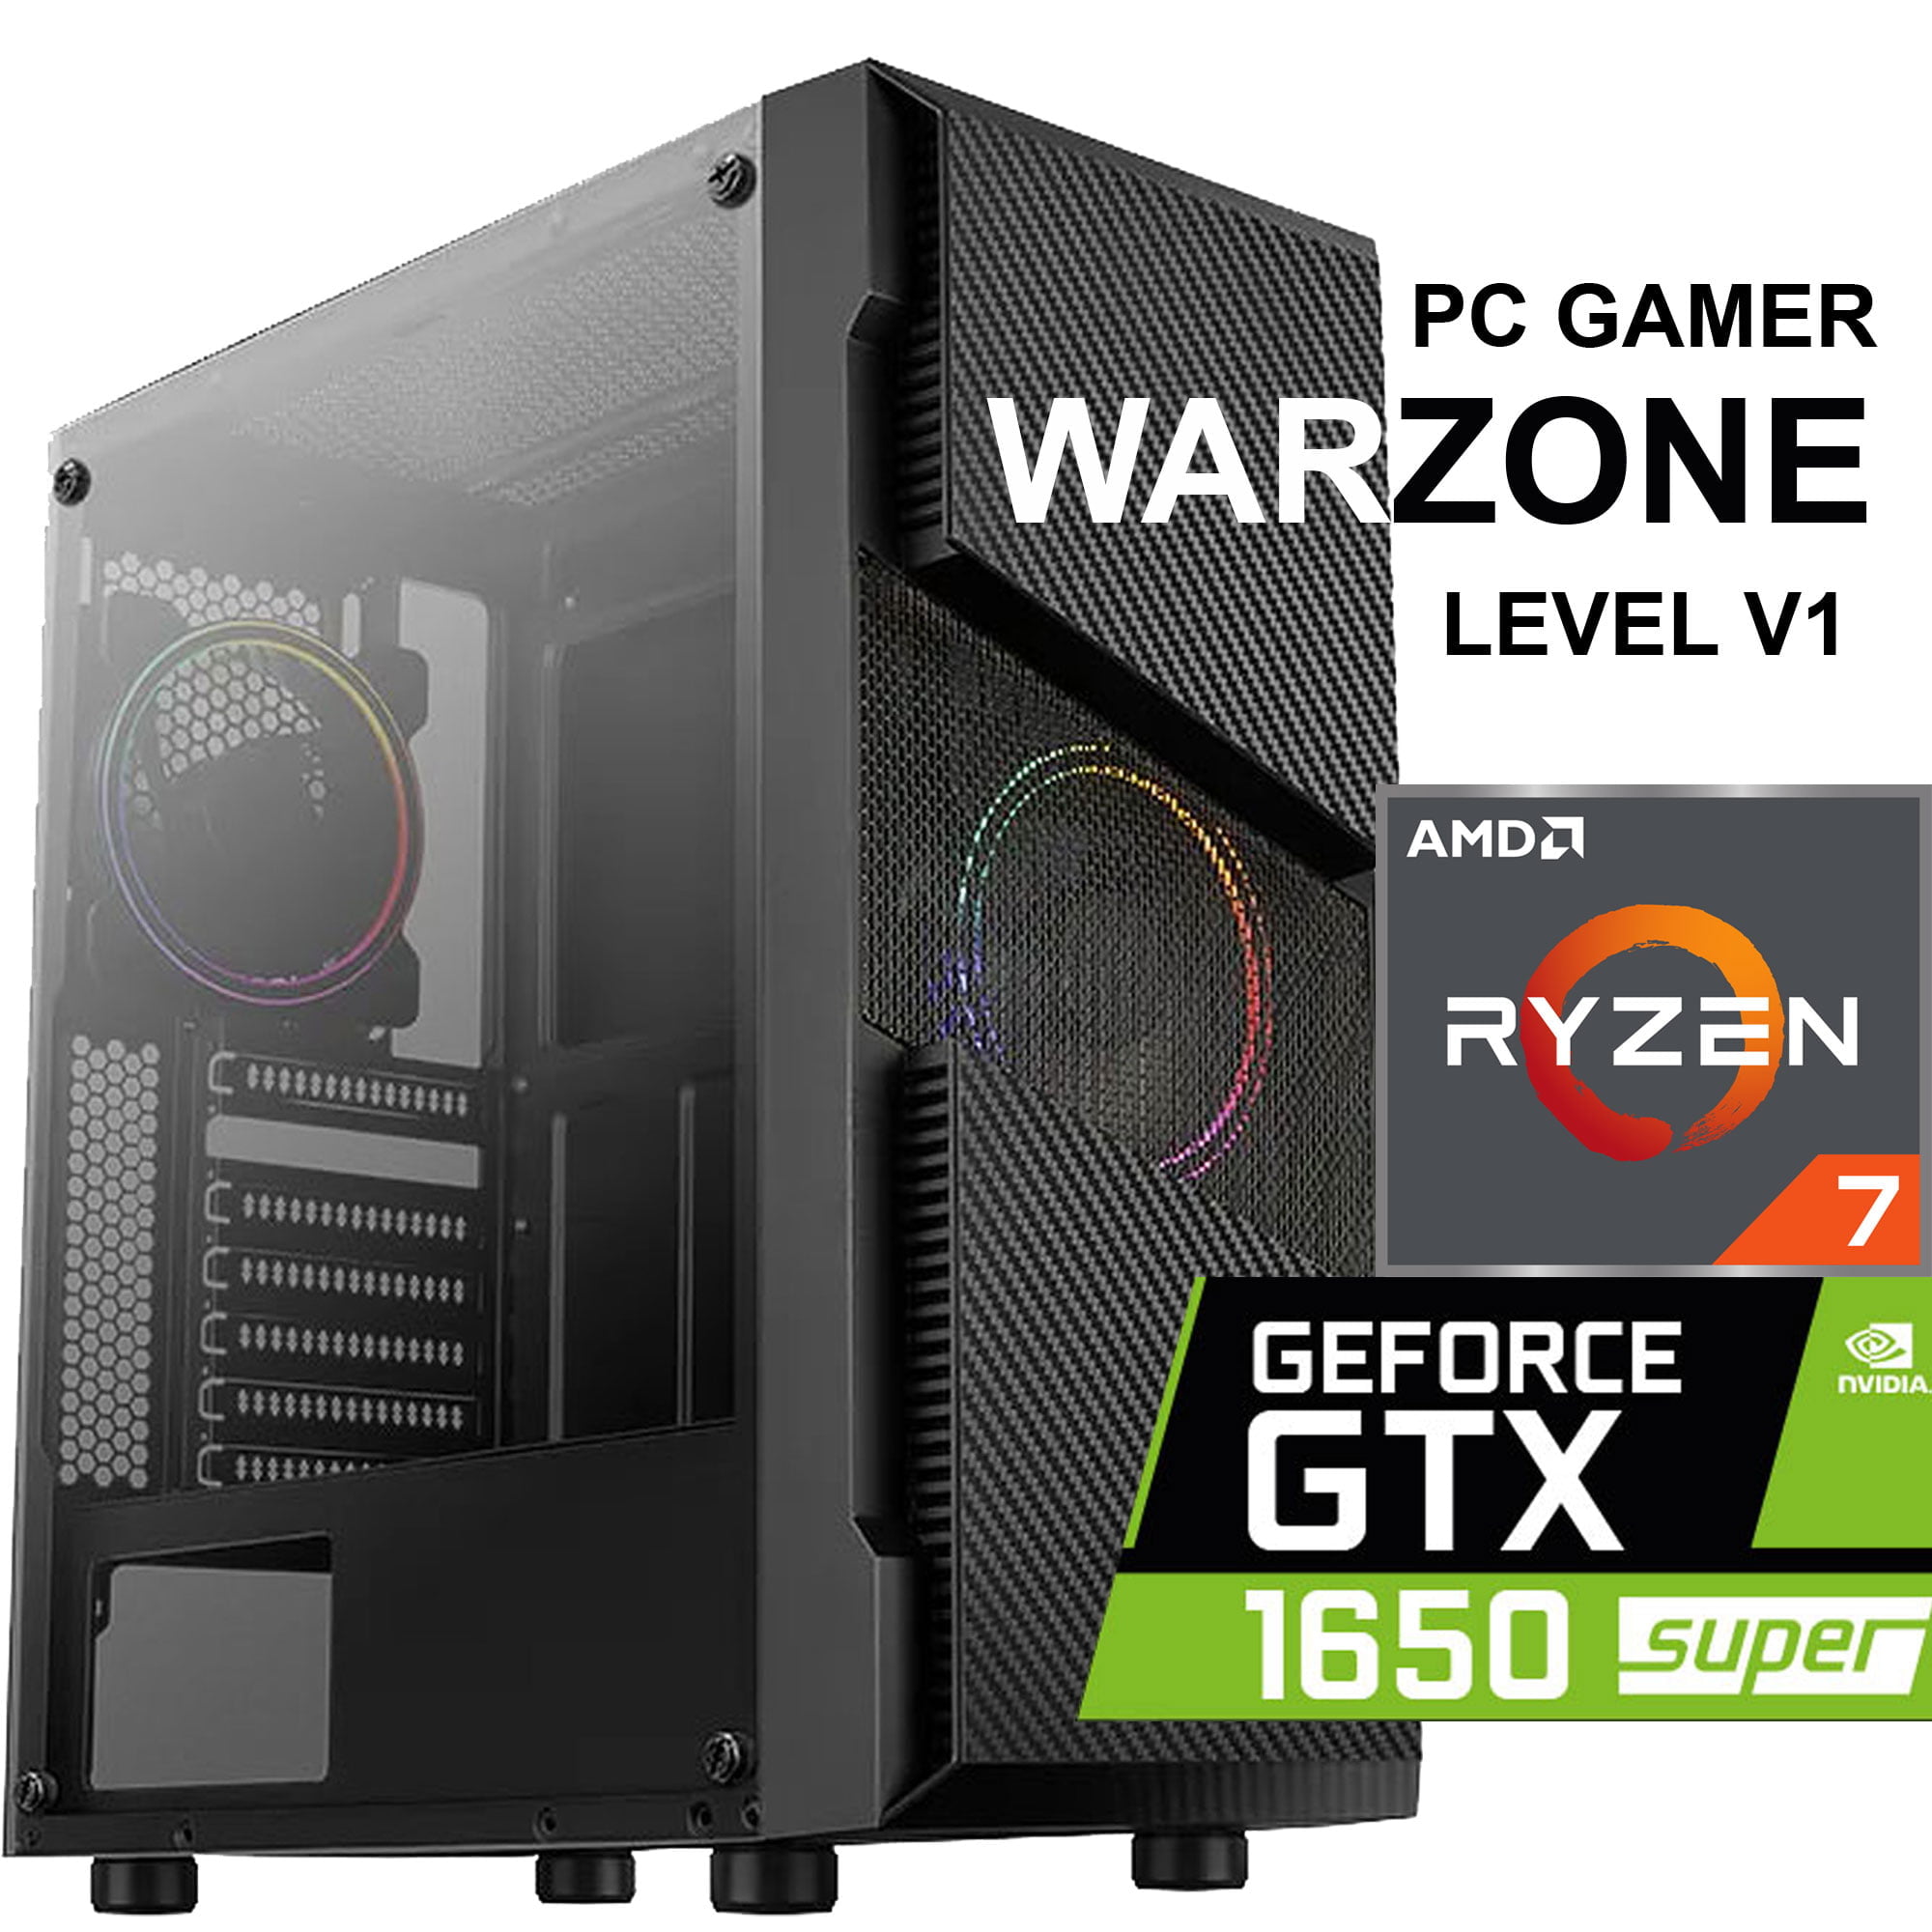 Warzone V1 [ PC Gamer AMD Ryzen 7 - GTX 1650 Super ]